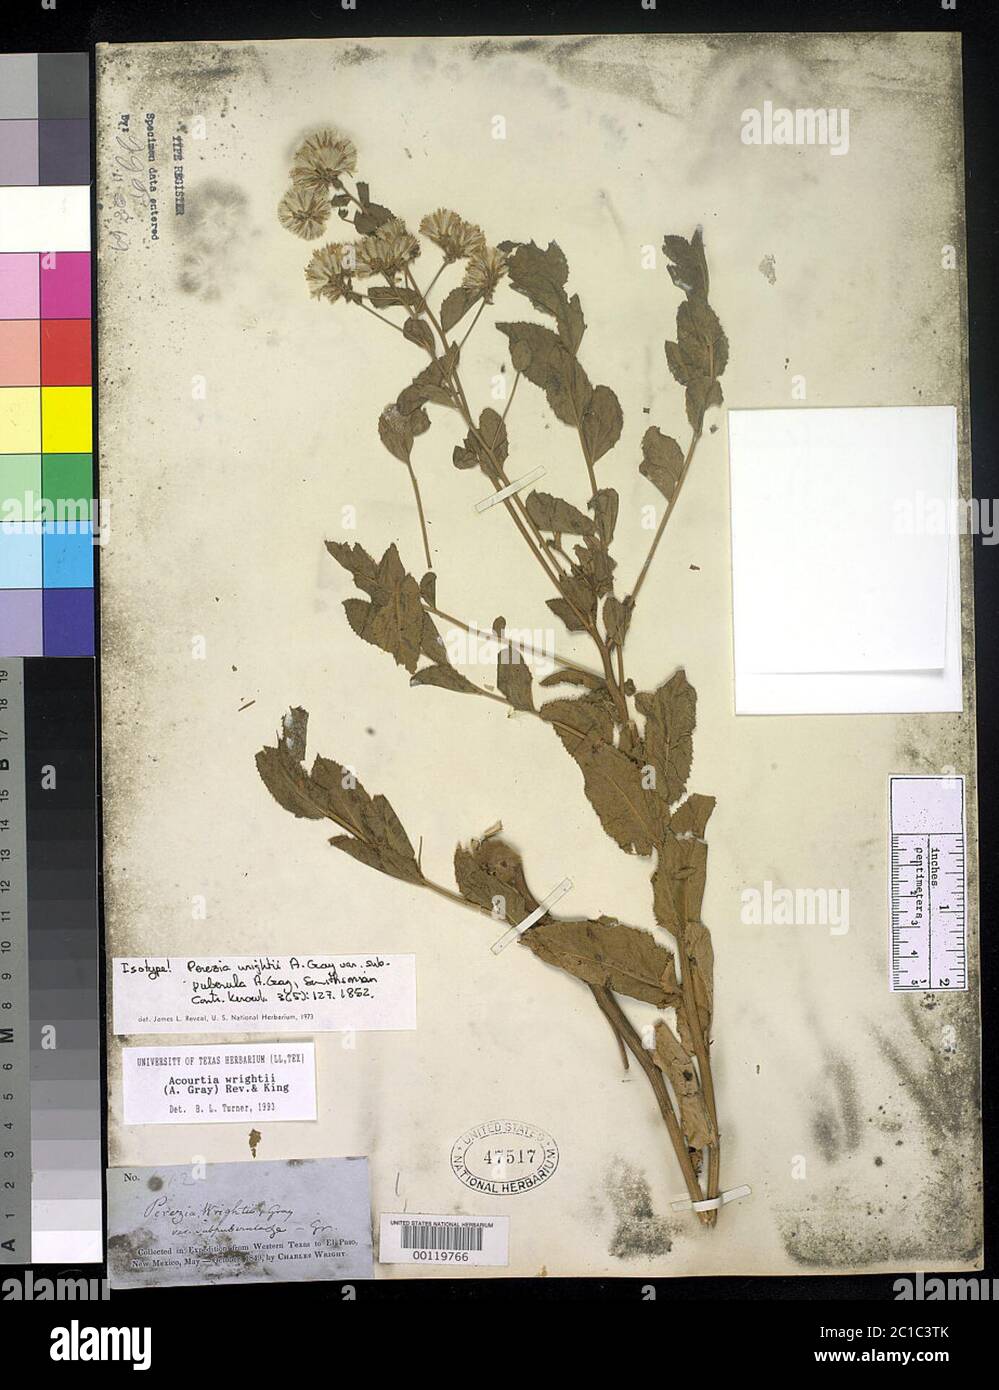 00119766.tif Perezia wrightii var subpuberula A Gray. Stock Photo